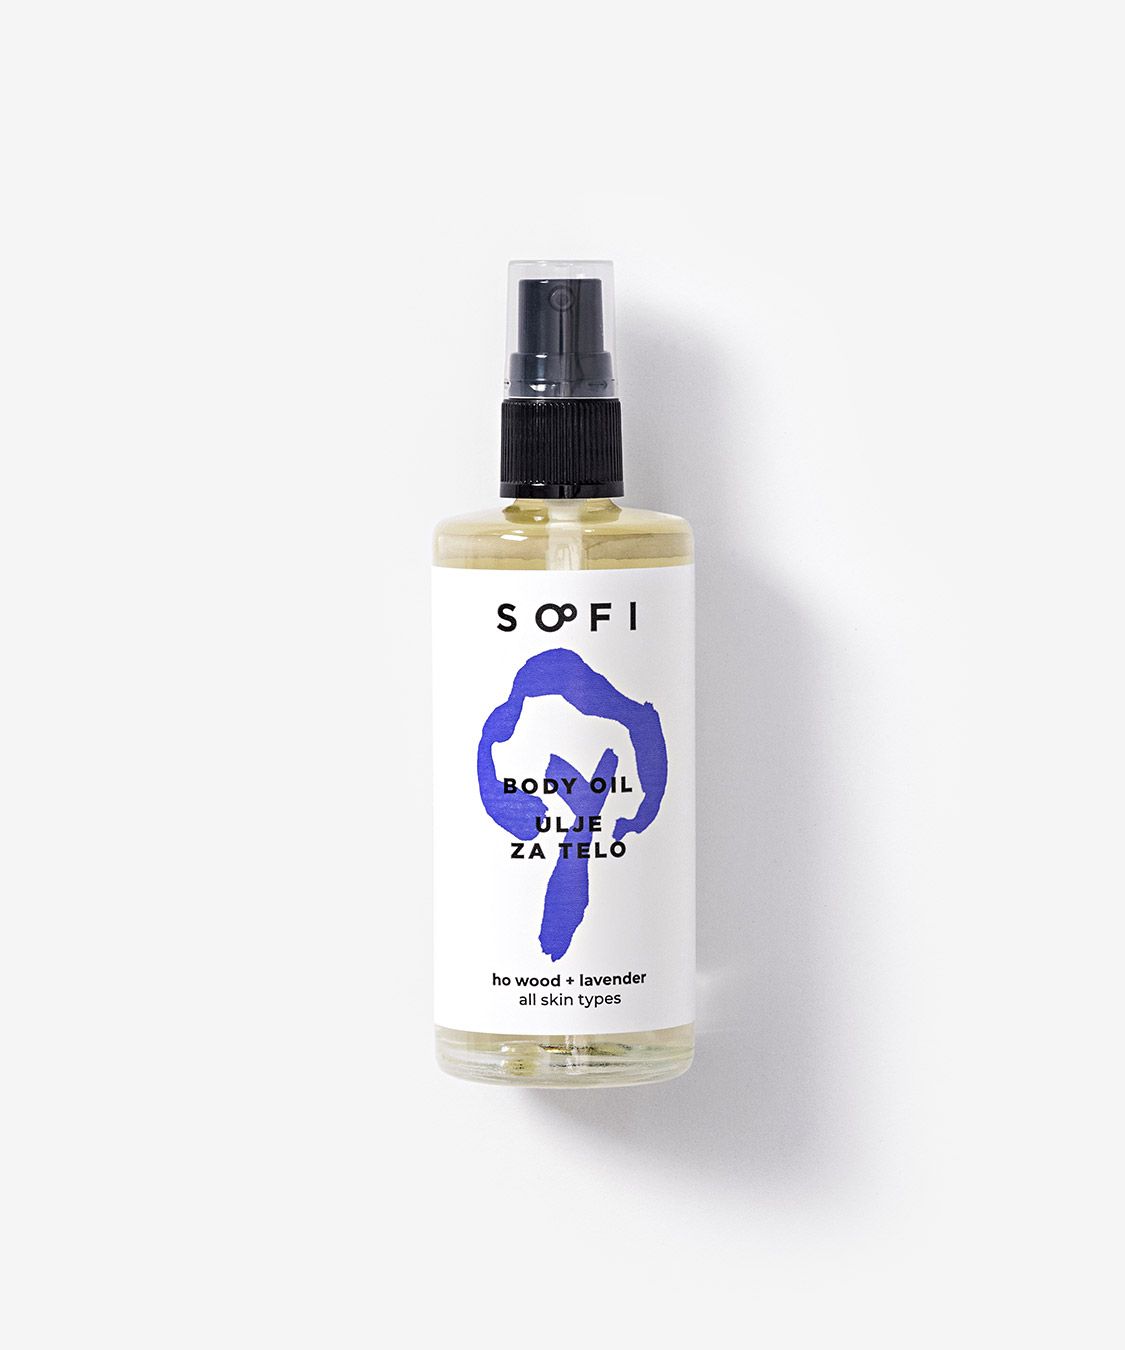 Body oil — ho wood + lavender